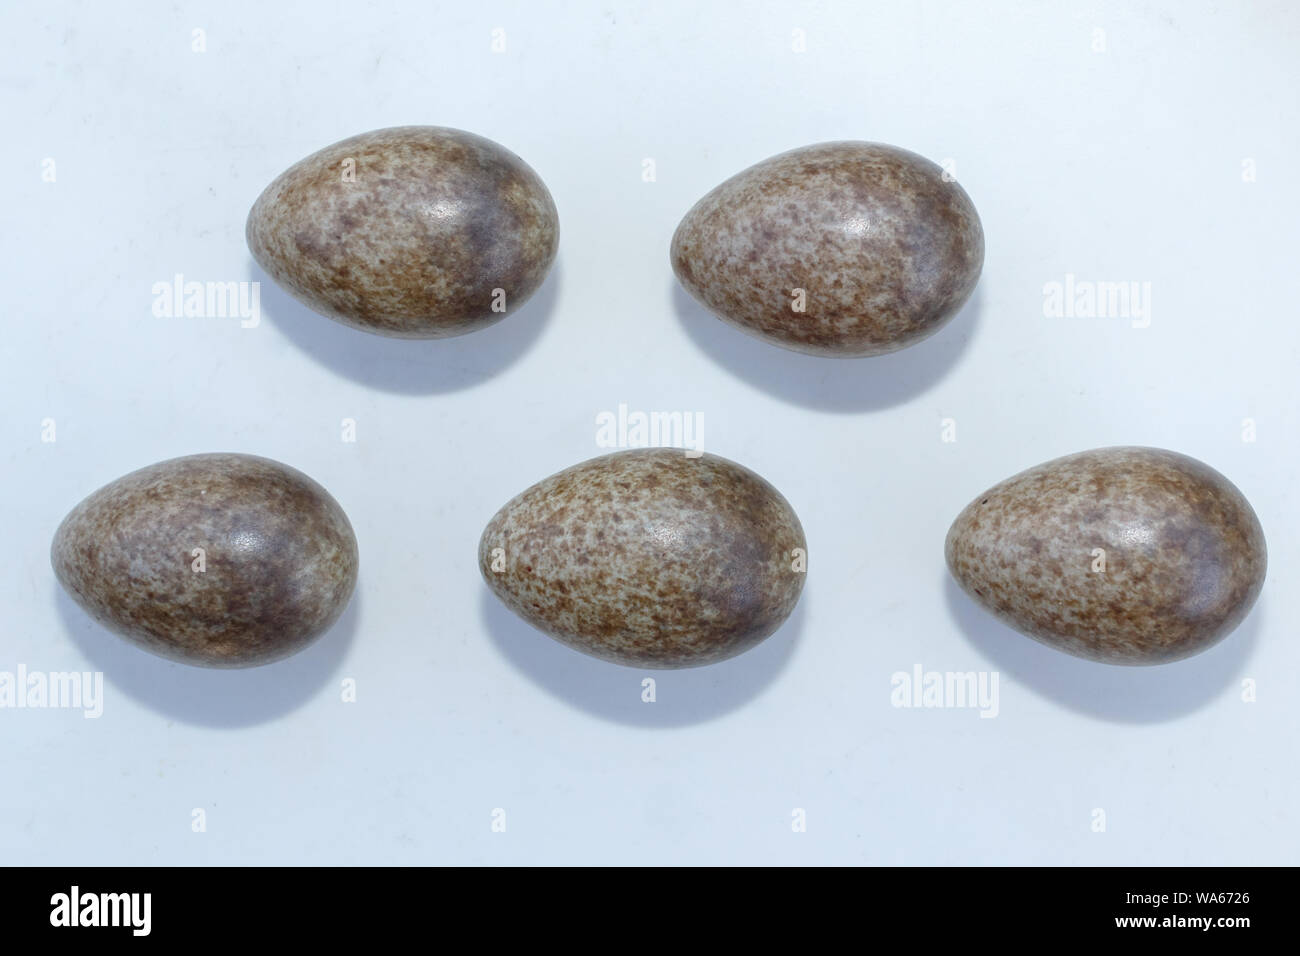 Alauda arvense. Le uova di allodola davanti a uno sfondo bianco, isolata. La Russia. Russia, Rjazan Regione (Ryazanskaya oblast) Foto Stock